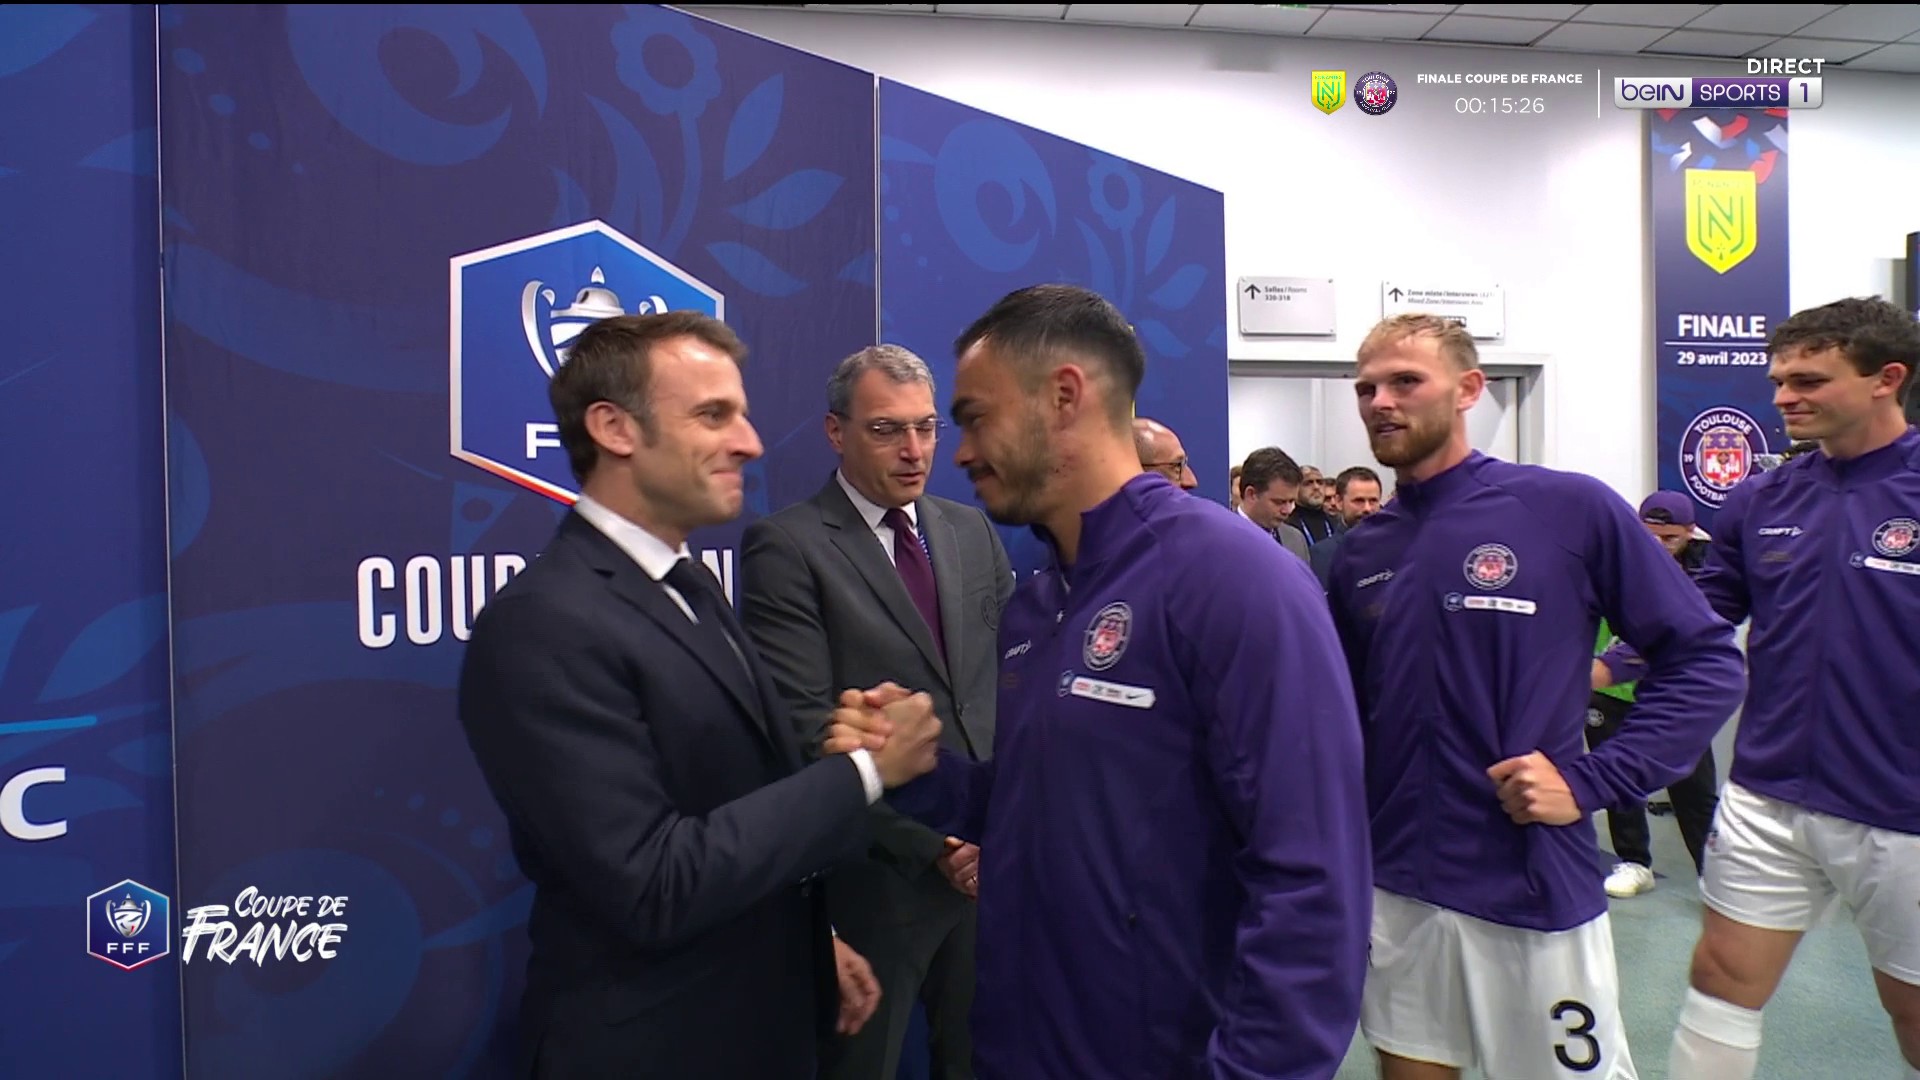 Le président Emmanuel Macron a salué les deux équipes